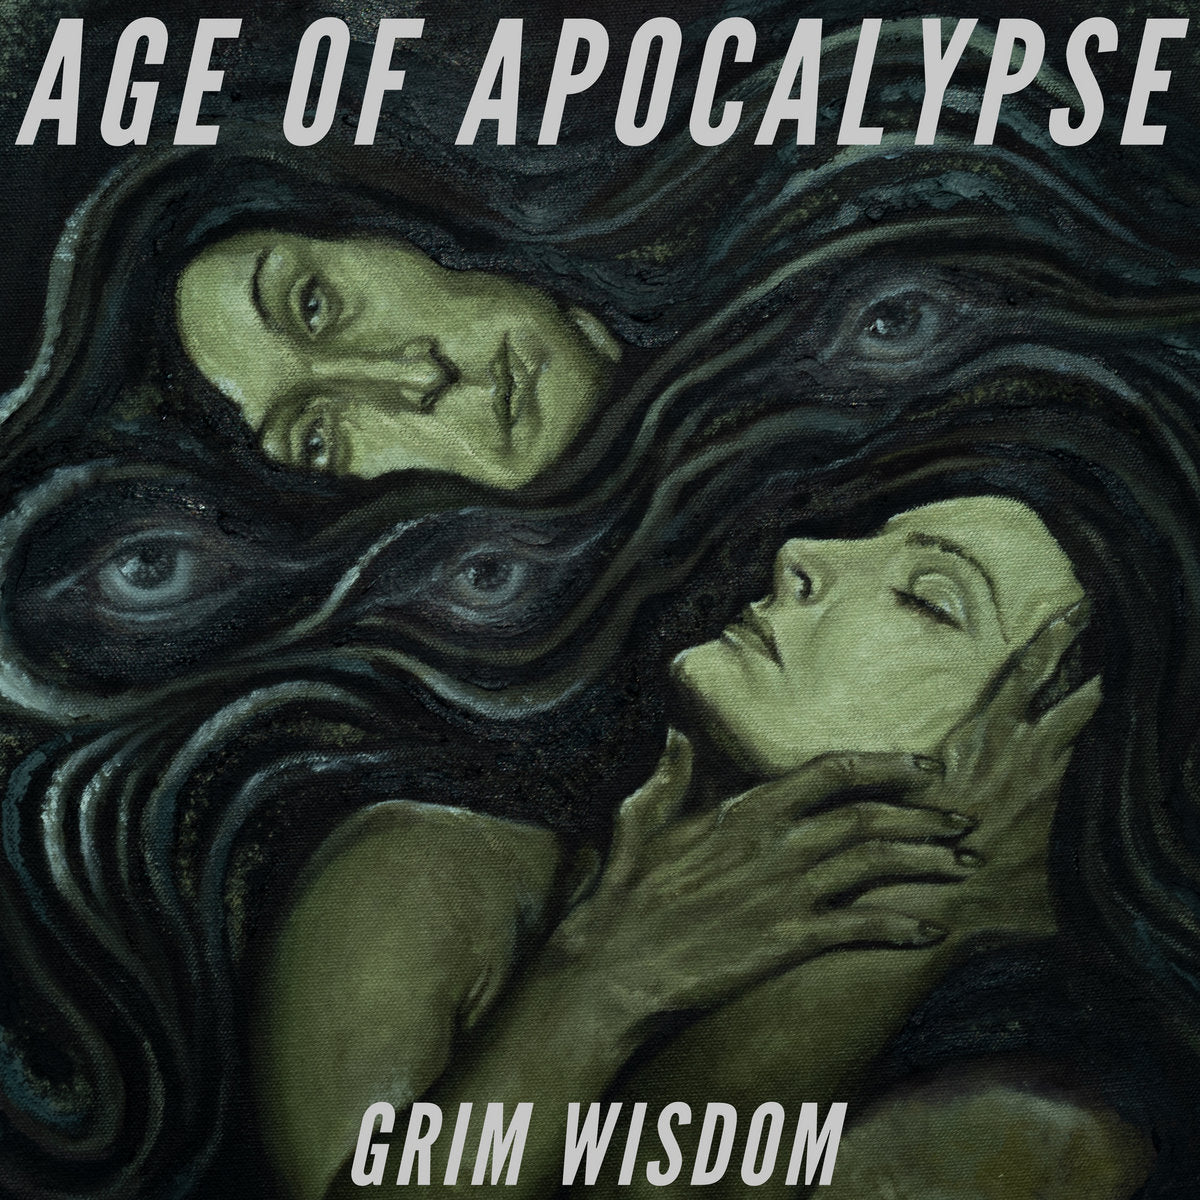 Age of Apocalypse "Grim Wisdom" 12" Vinyl